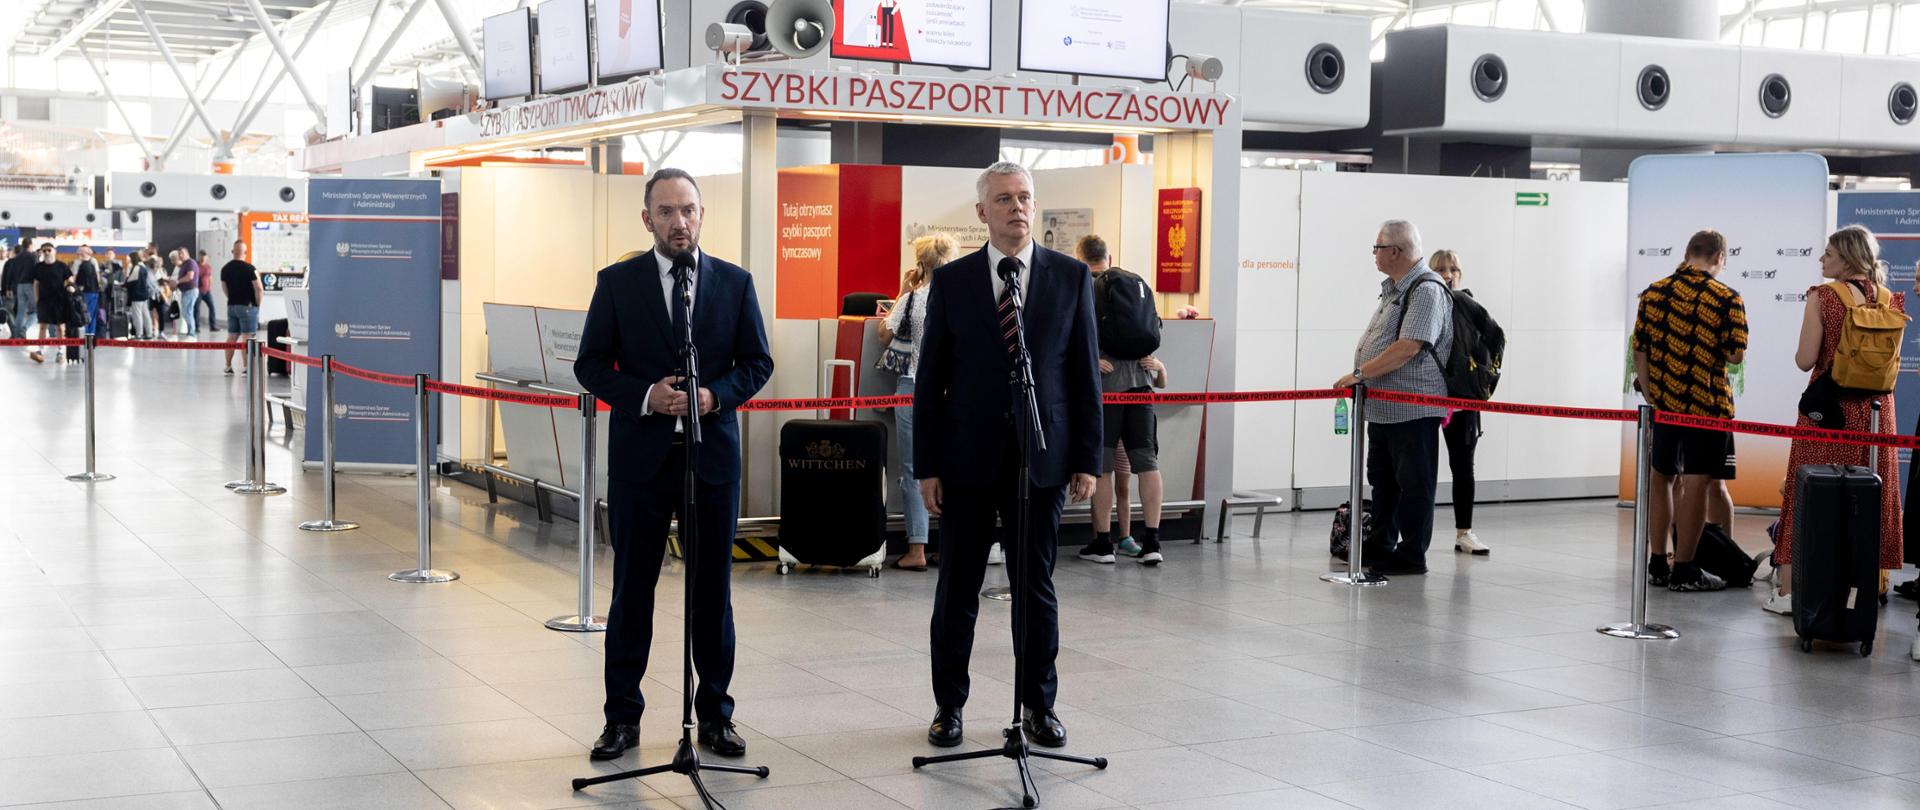 Na zdjęciu widać dwóch mężczyzn, stojących przy mikrofonach